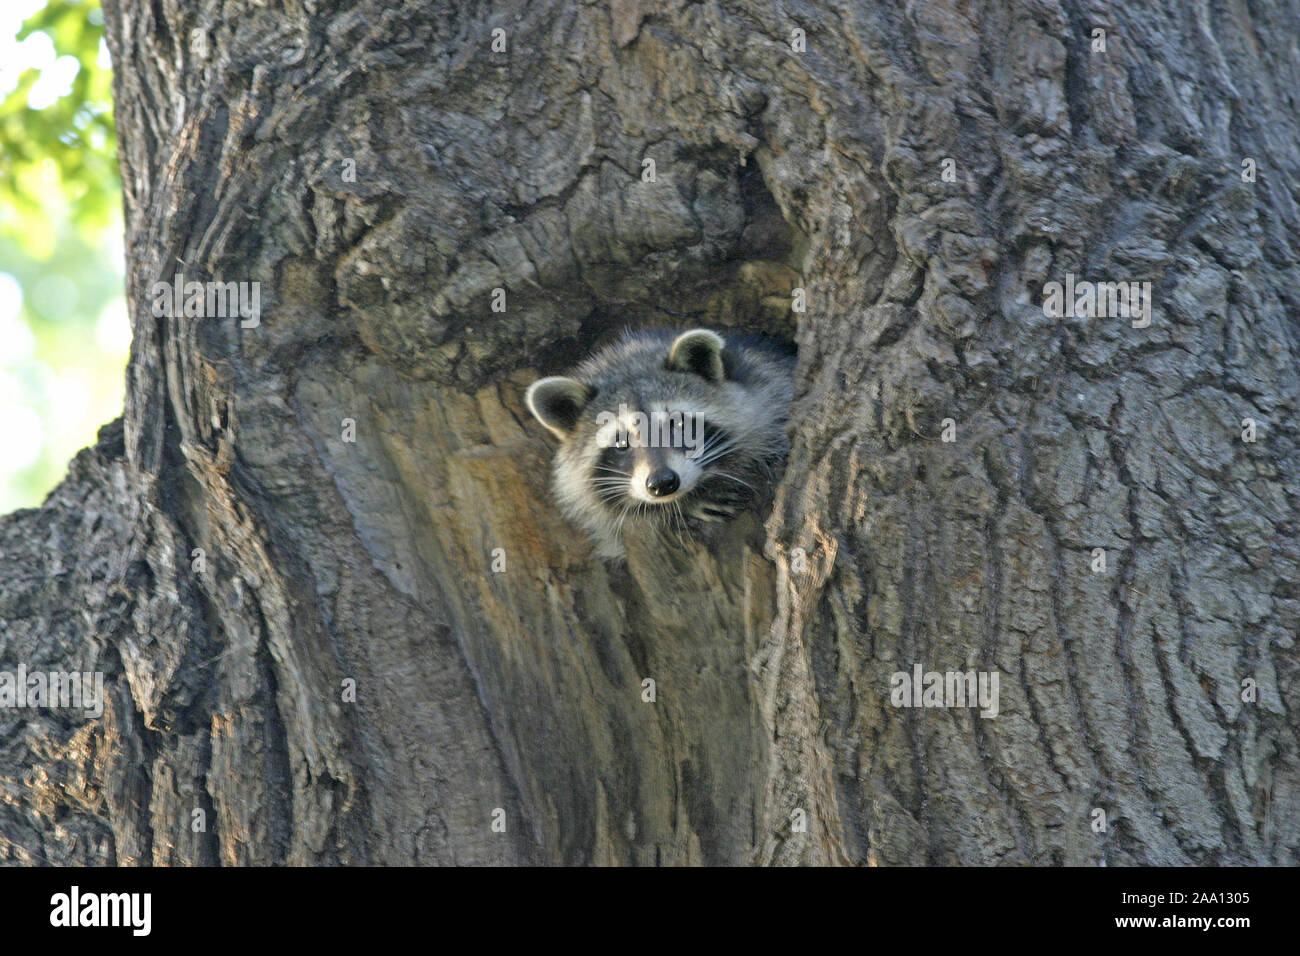 Waschbär schaut aus seiner Baumhöhle in einer alten Eiche / Raccoon is looking out of his tree cave in a old oak tree Stock Photo